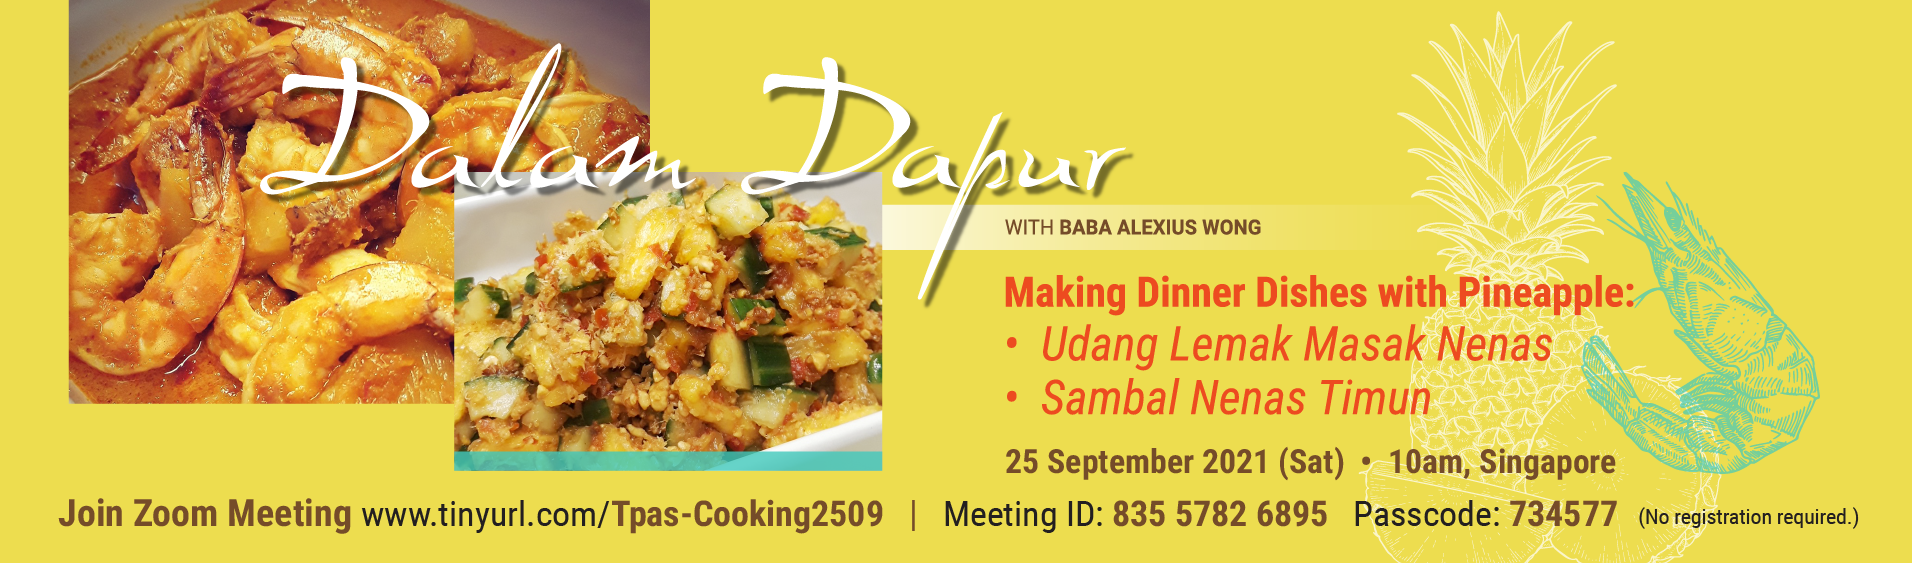 Online cooking demo: Making dinner with pineapples -udang lemak masak nenas & sambal nenas timun by Baba Alexius Wong